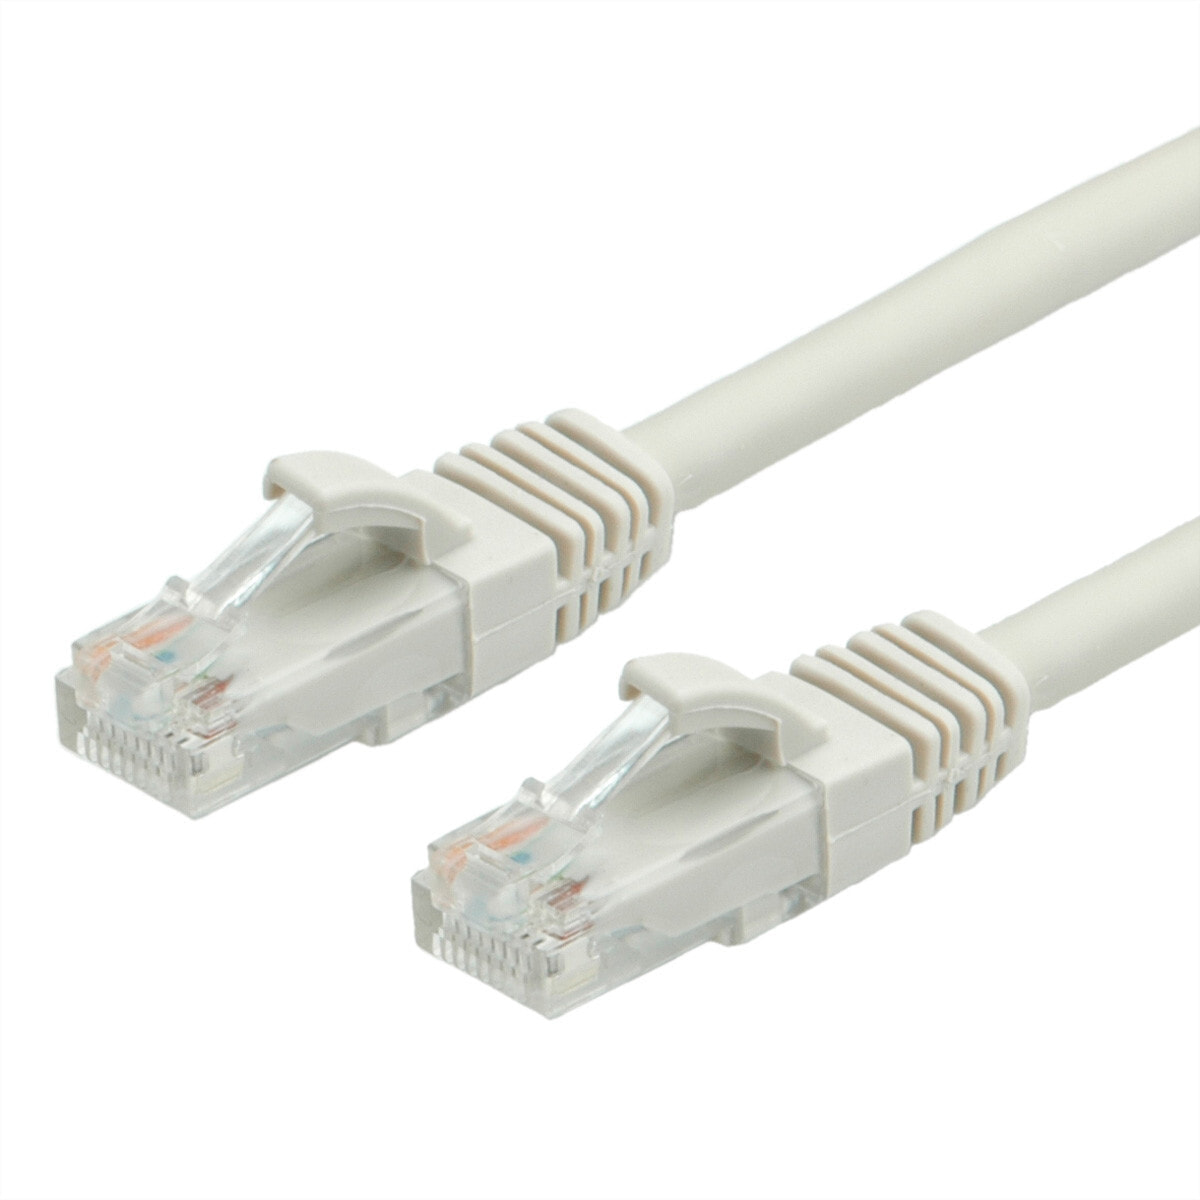 Value UTP Patch Cord Cat.6a, grey 20 m сетевой кабель Серый 21.99.0879